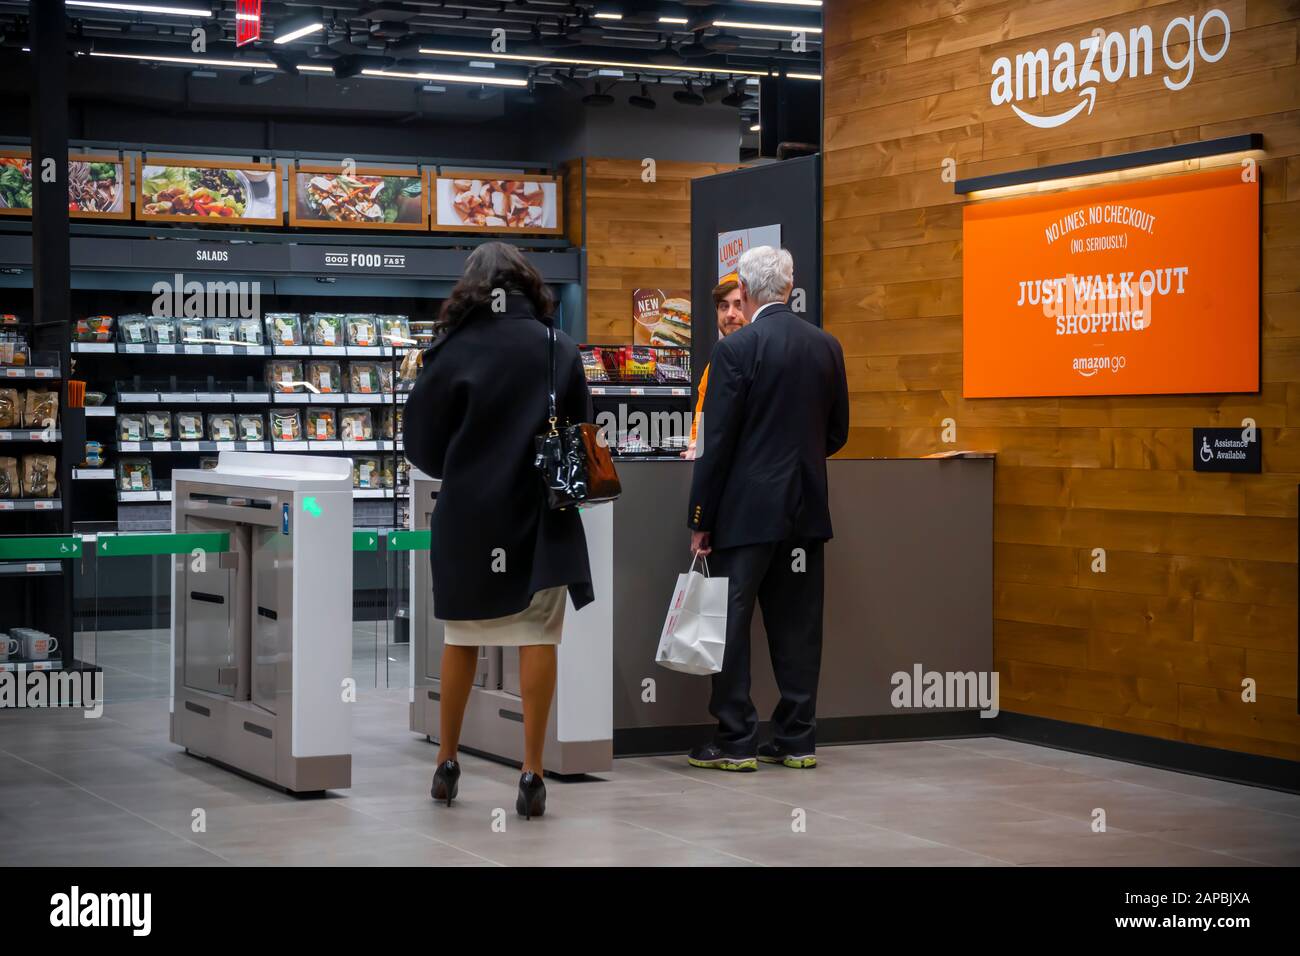 Il nuovissimo negozio Amazon Go del Rockefeller Center di New York giovedì  16 gennaio 2020. Il negozio, per lo più fornito di cibi preparati e punti  metallici, consente a un acquirente con